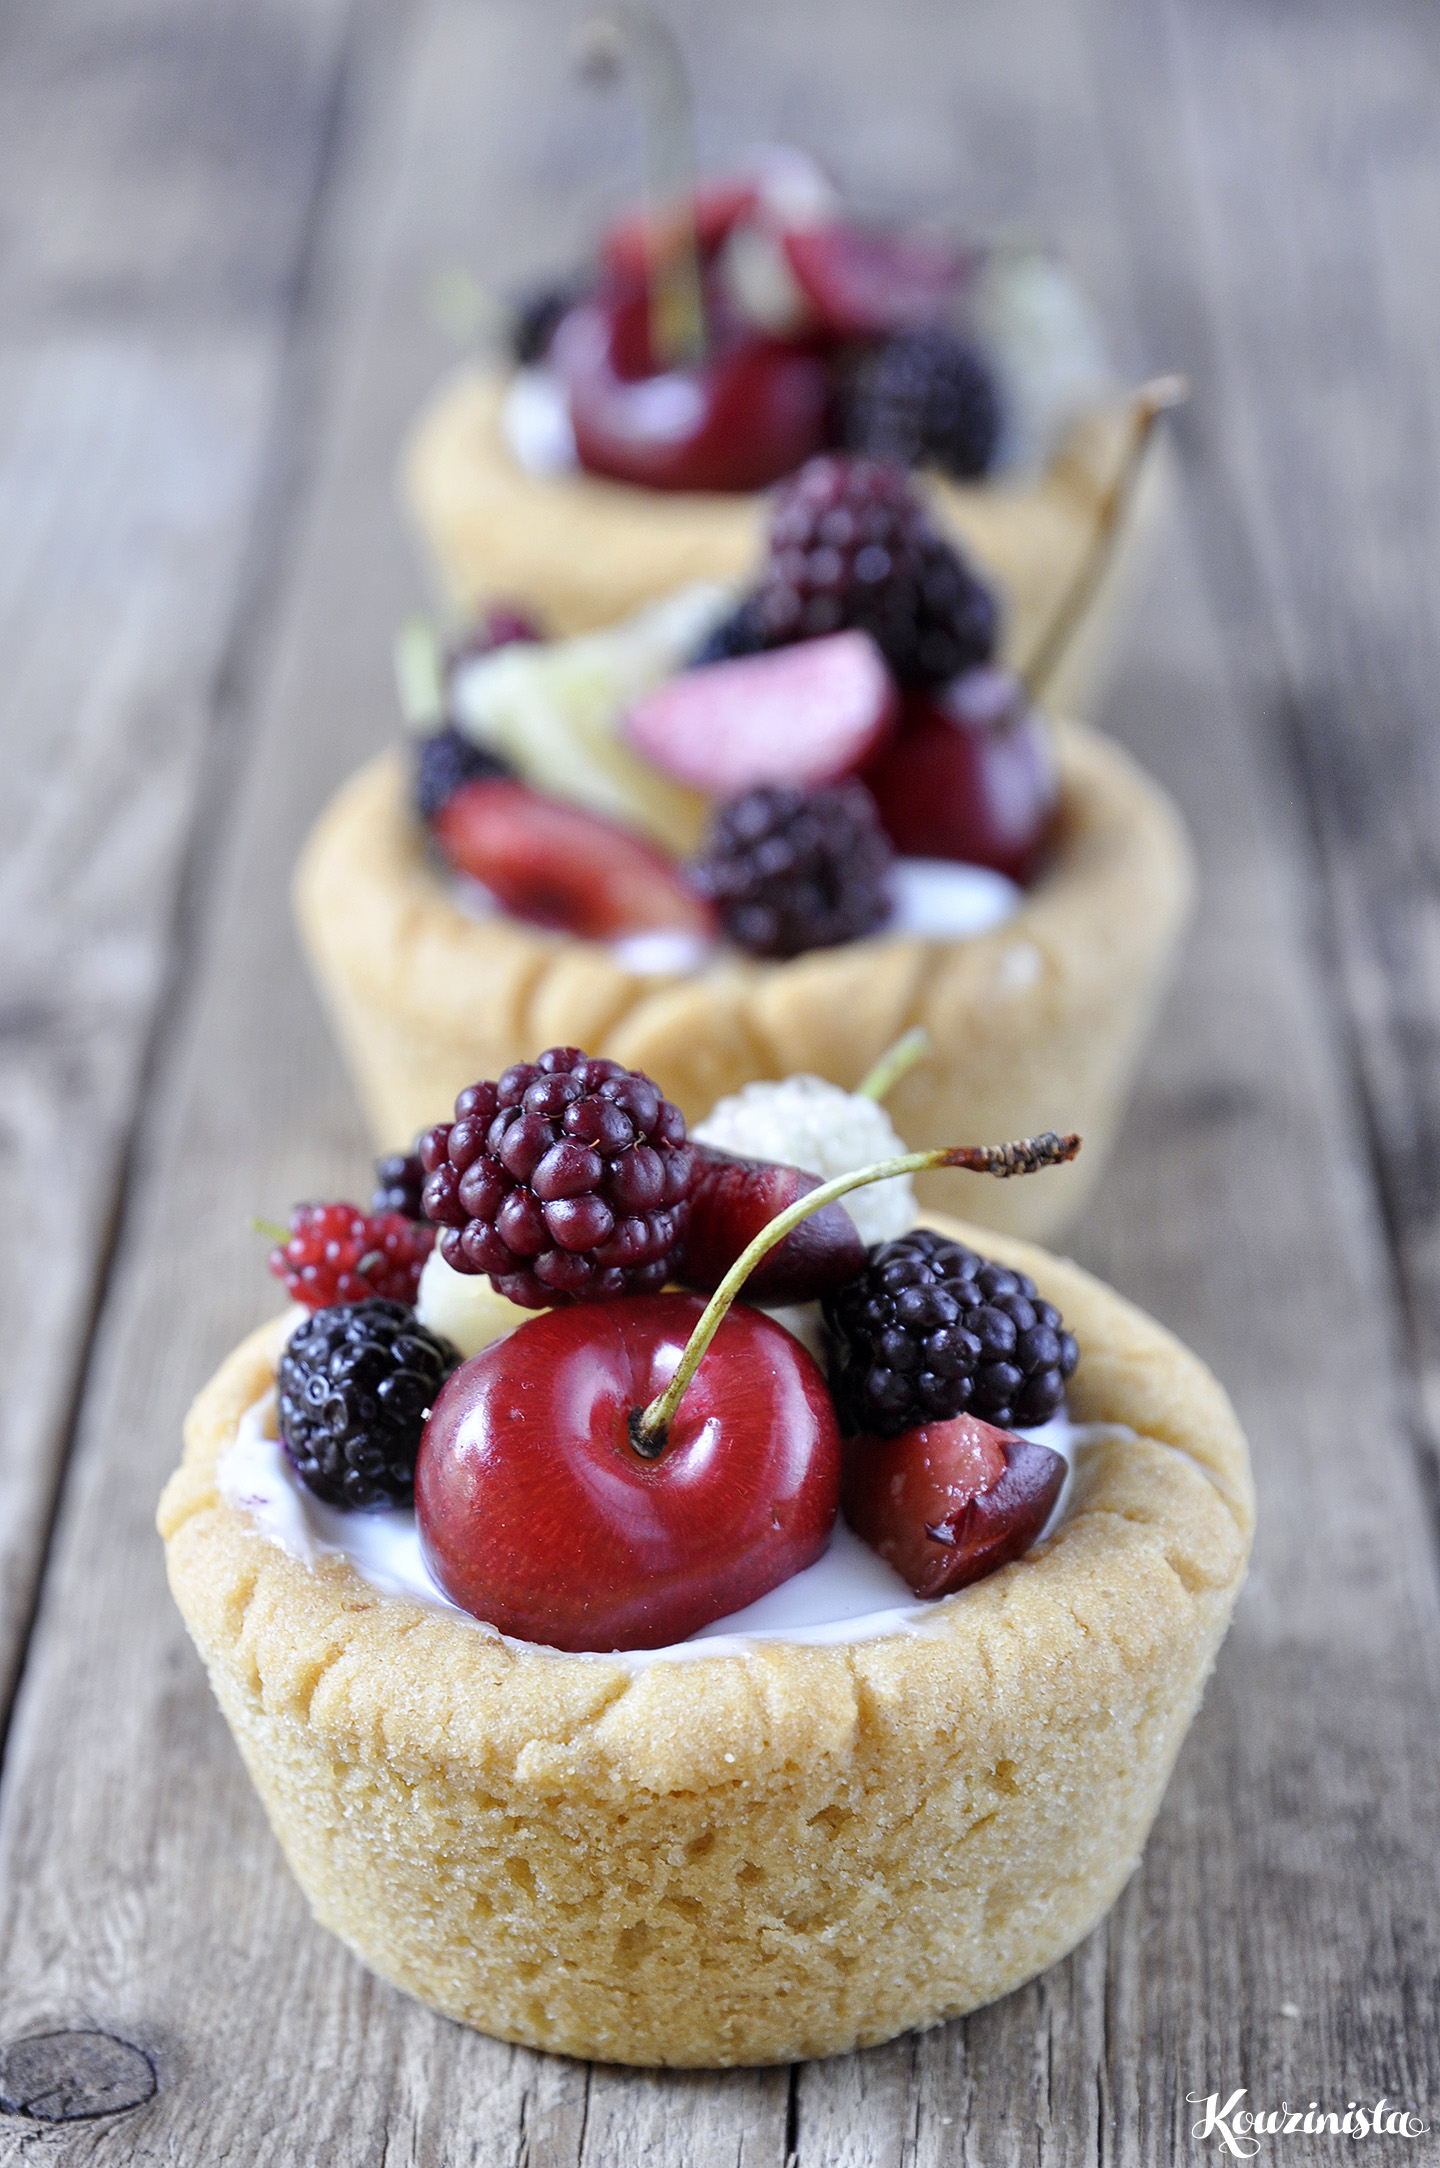 Ταρτάκια με ζύμη μπισκότου & φρέσκα φρούτα / Fresh fruit cheesecake sugar cookie cups